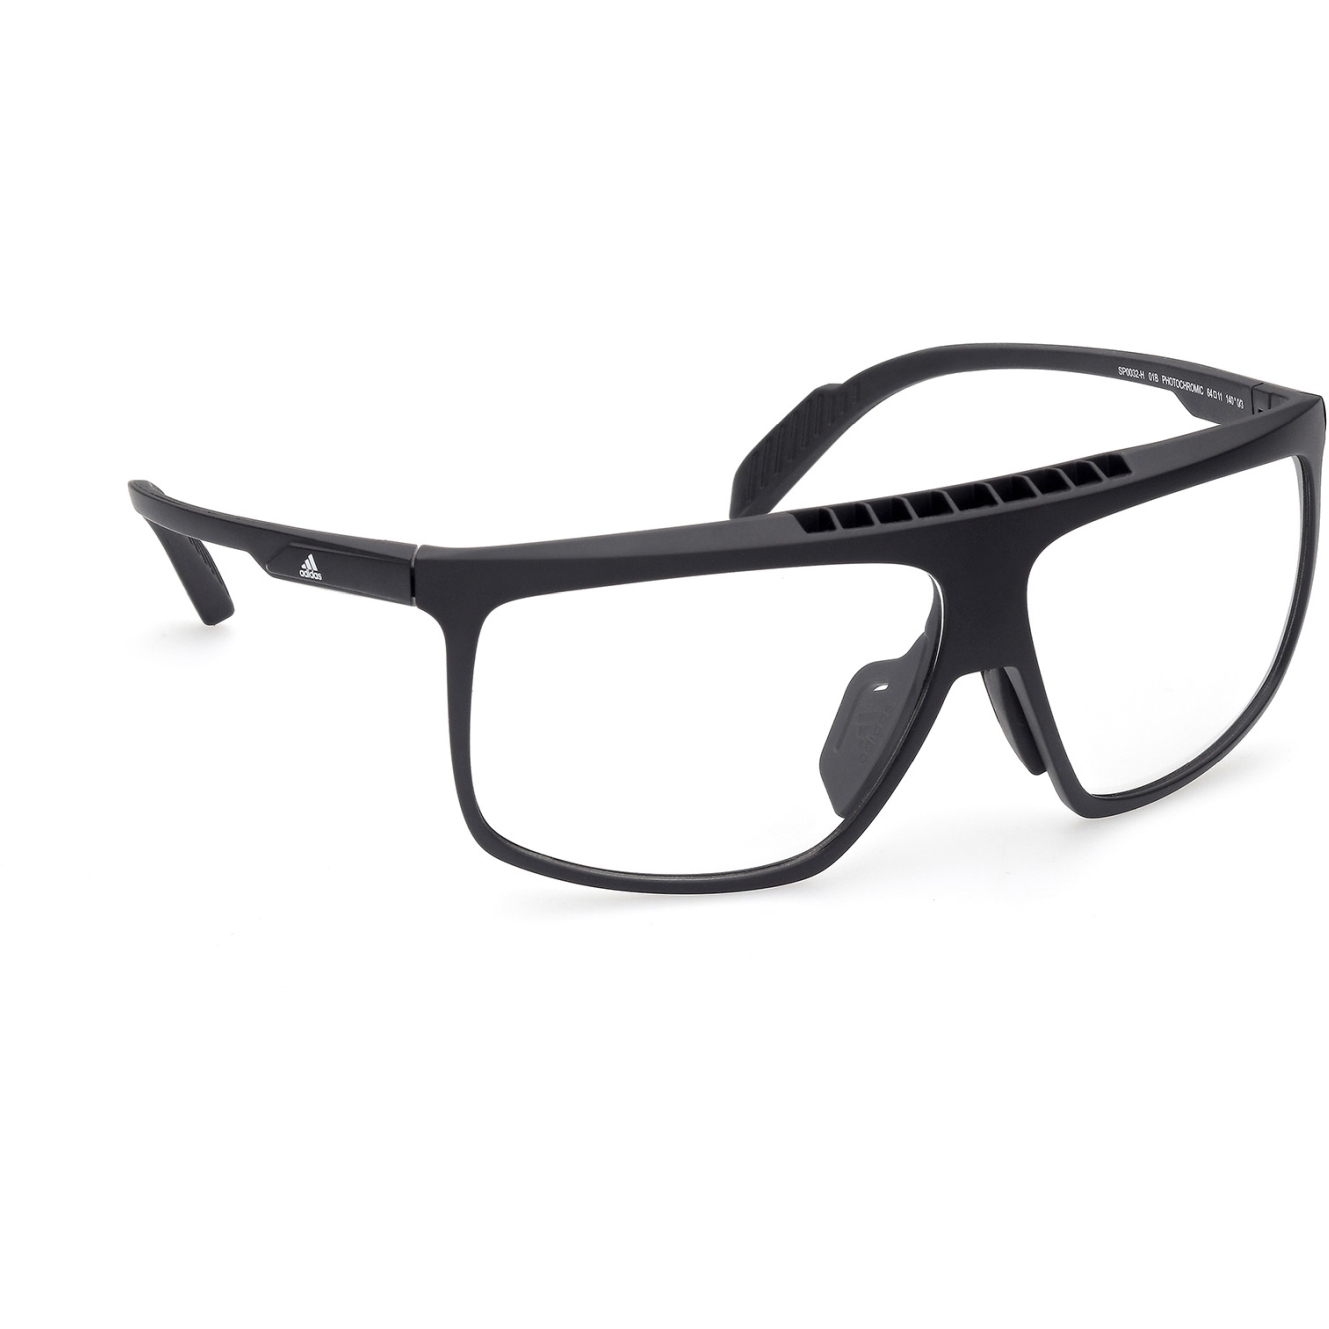 Produktbild von adidas Sp0032-H Injected Sportsonnenbrille - Black / Vario clear